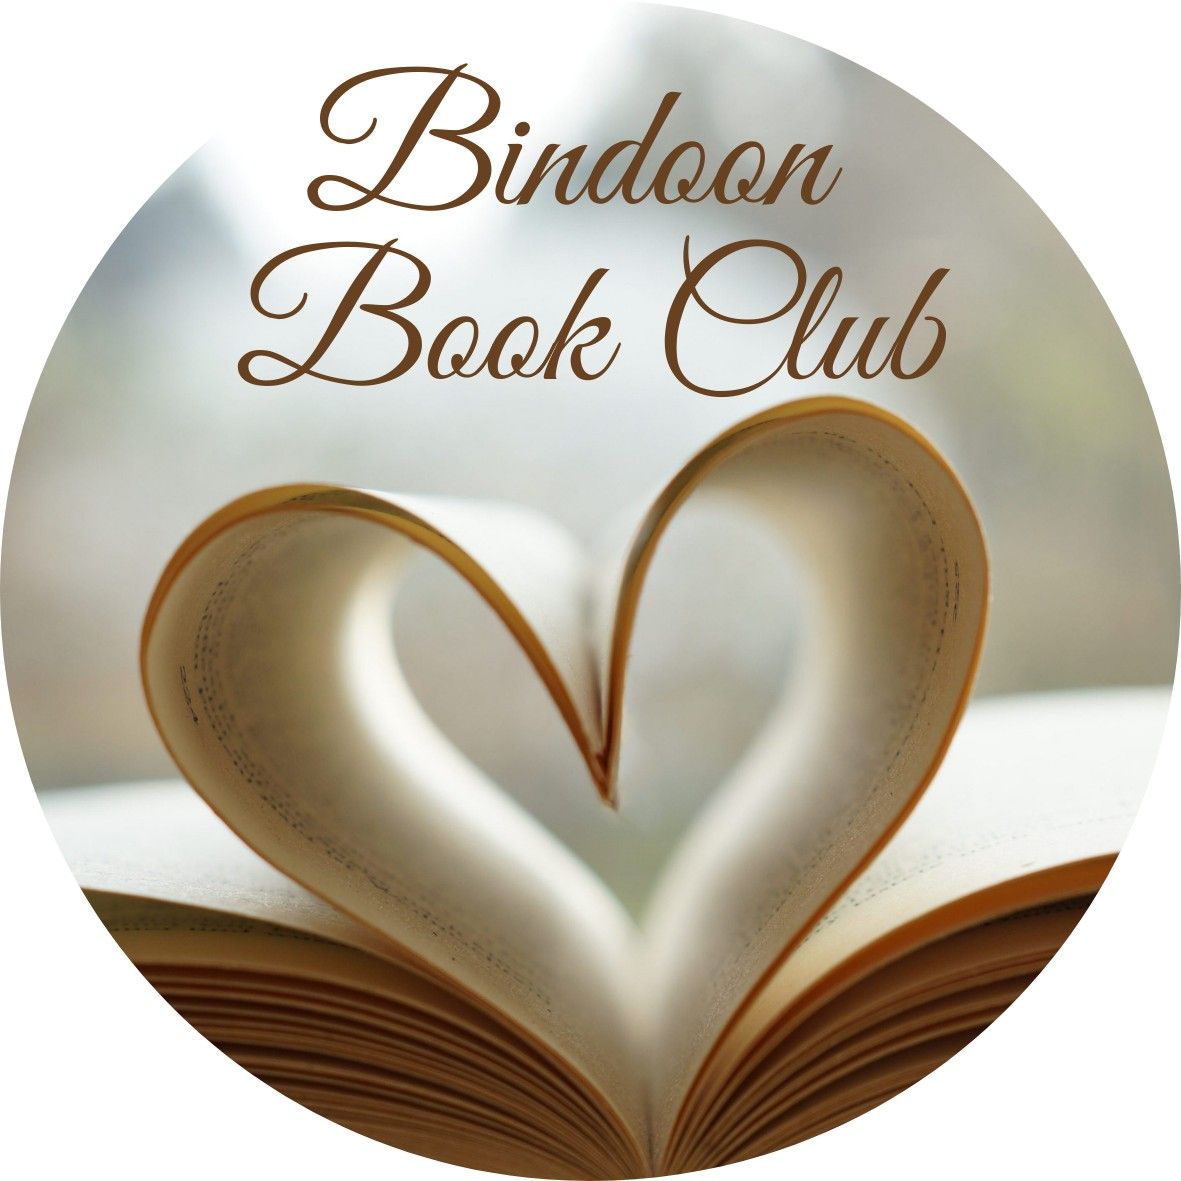 Bindoon Book Club